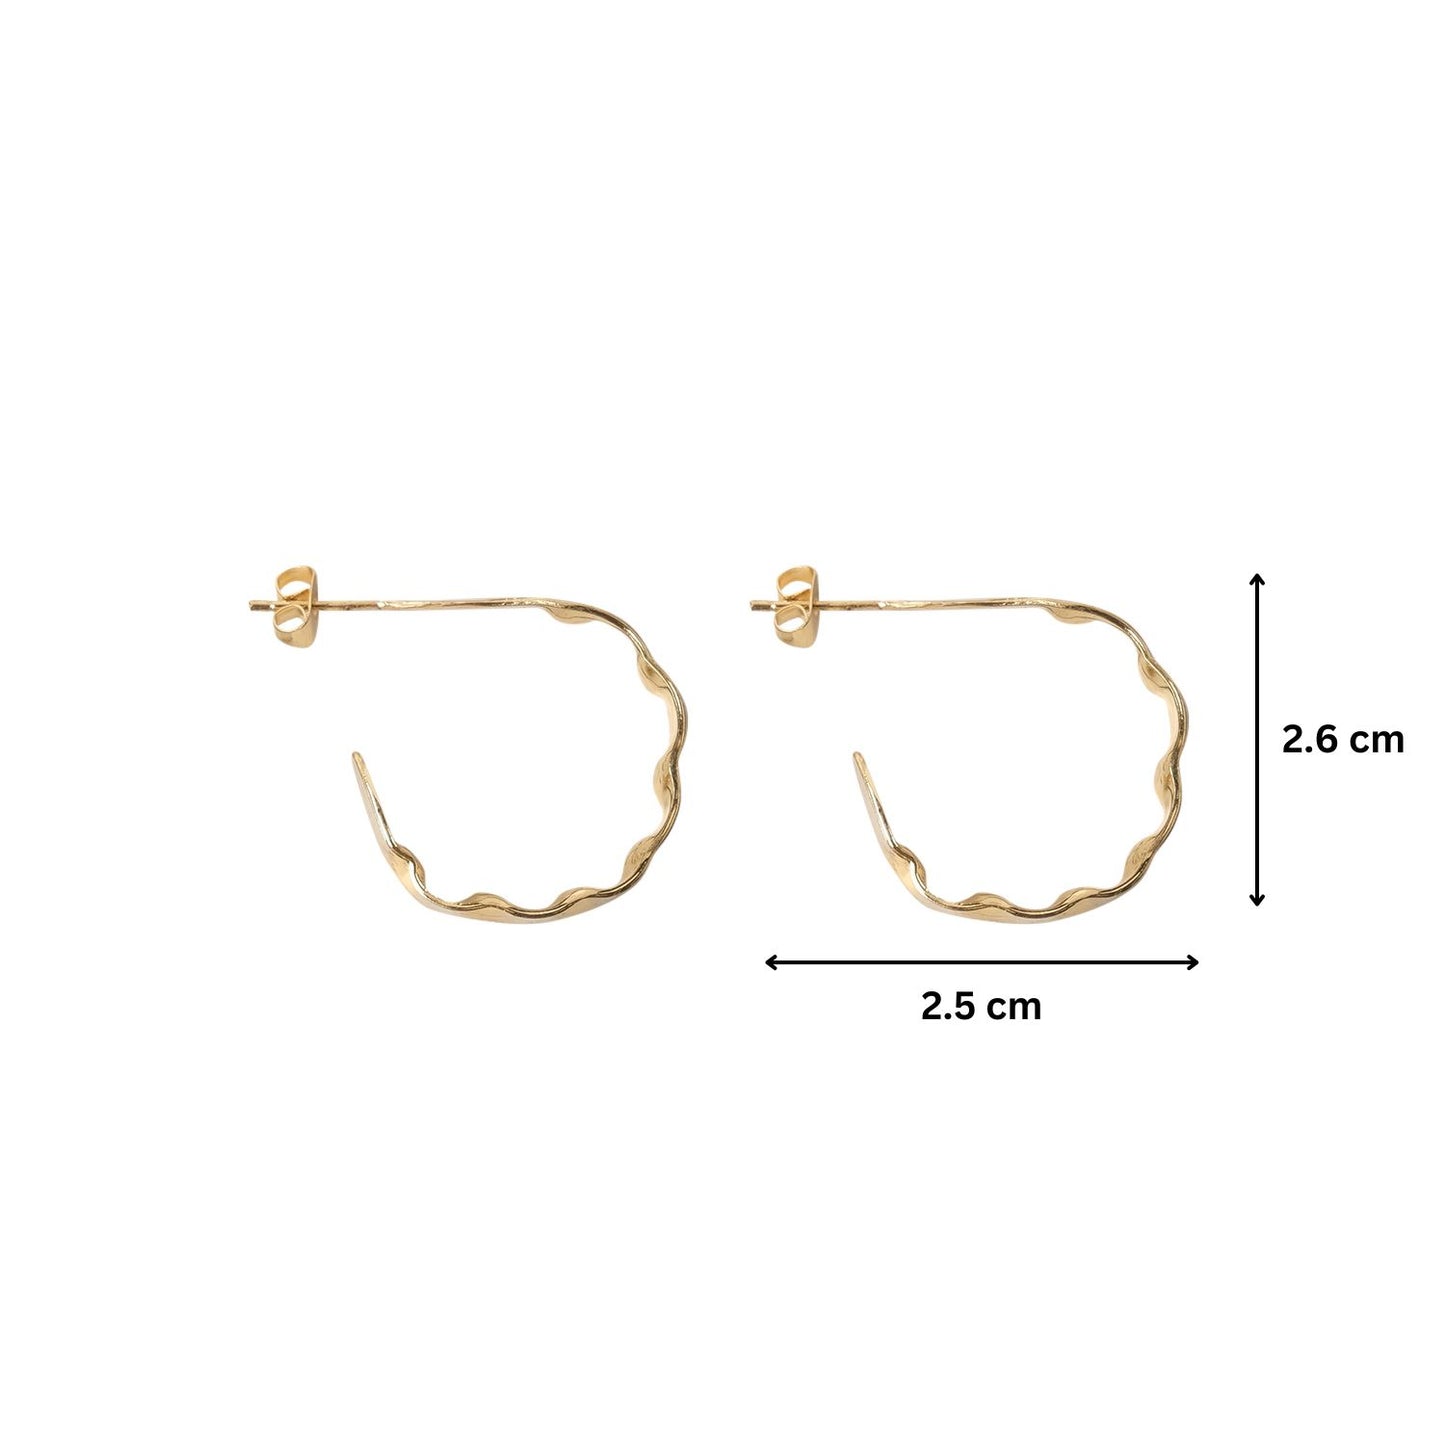 Gold Luxe Hoops Earrings